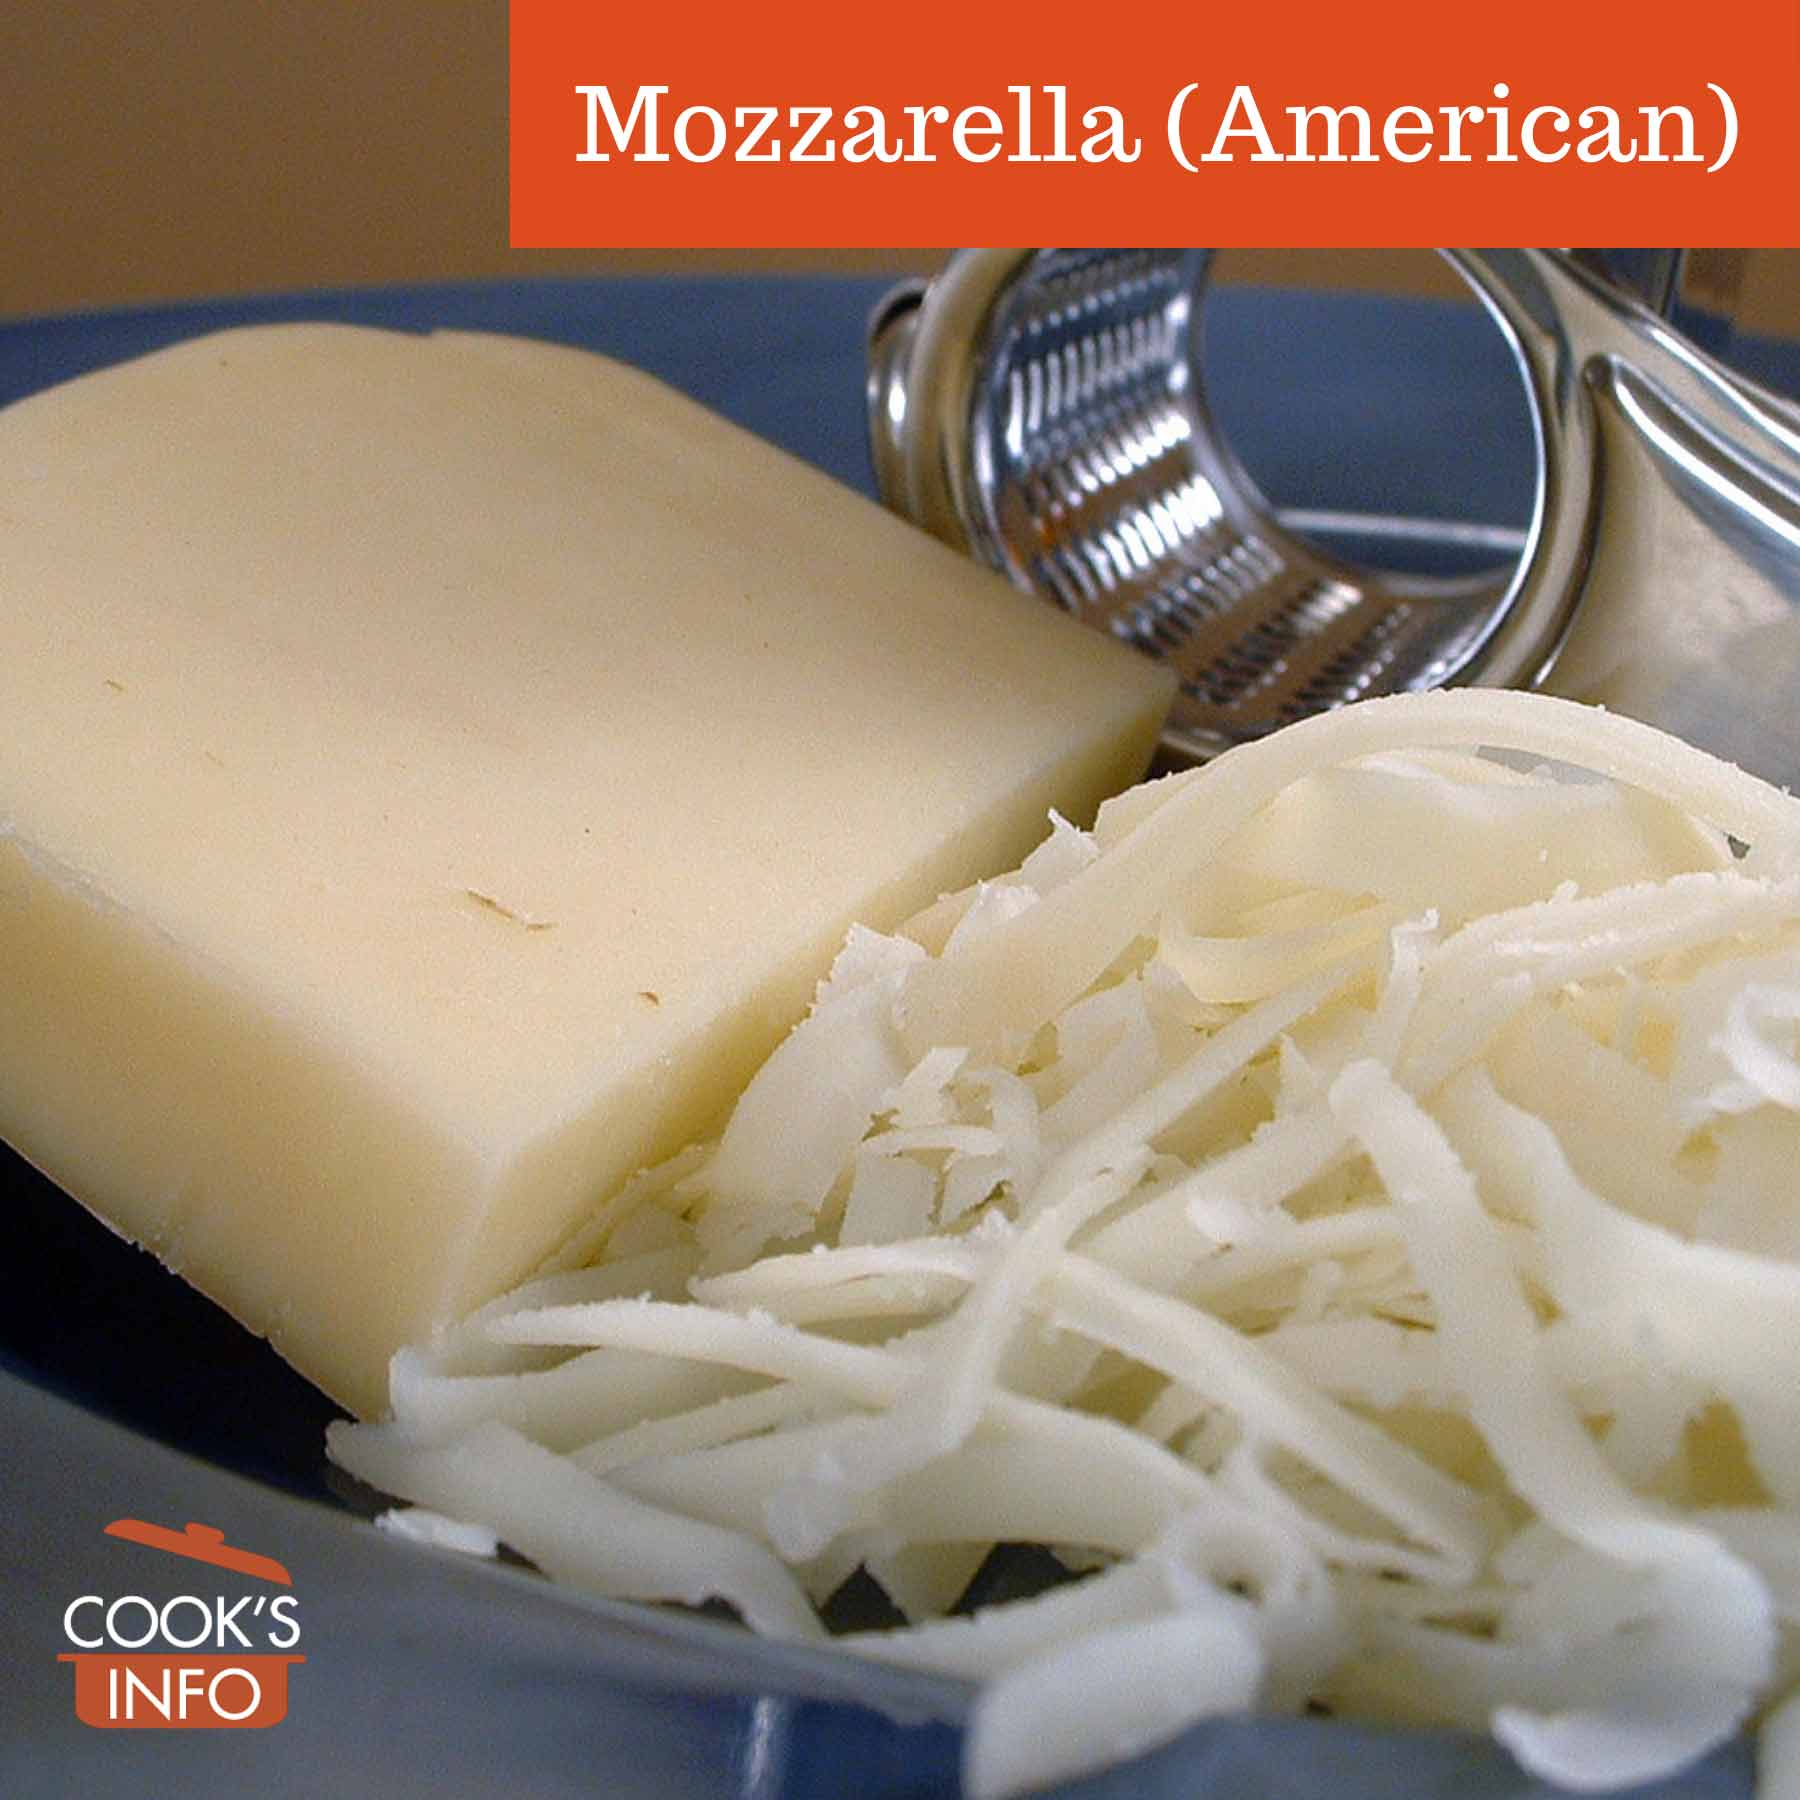 American-style mozzarella